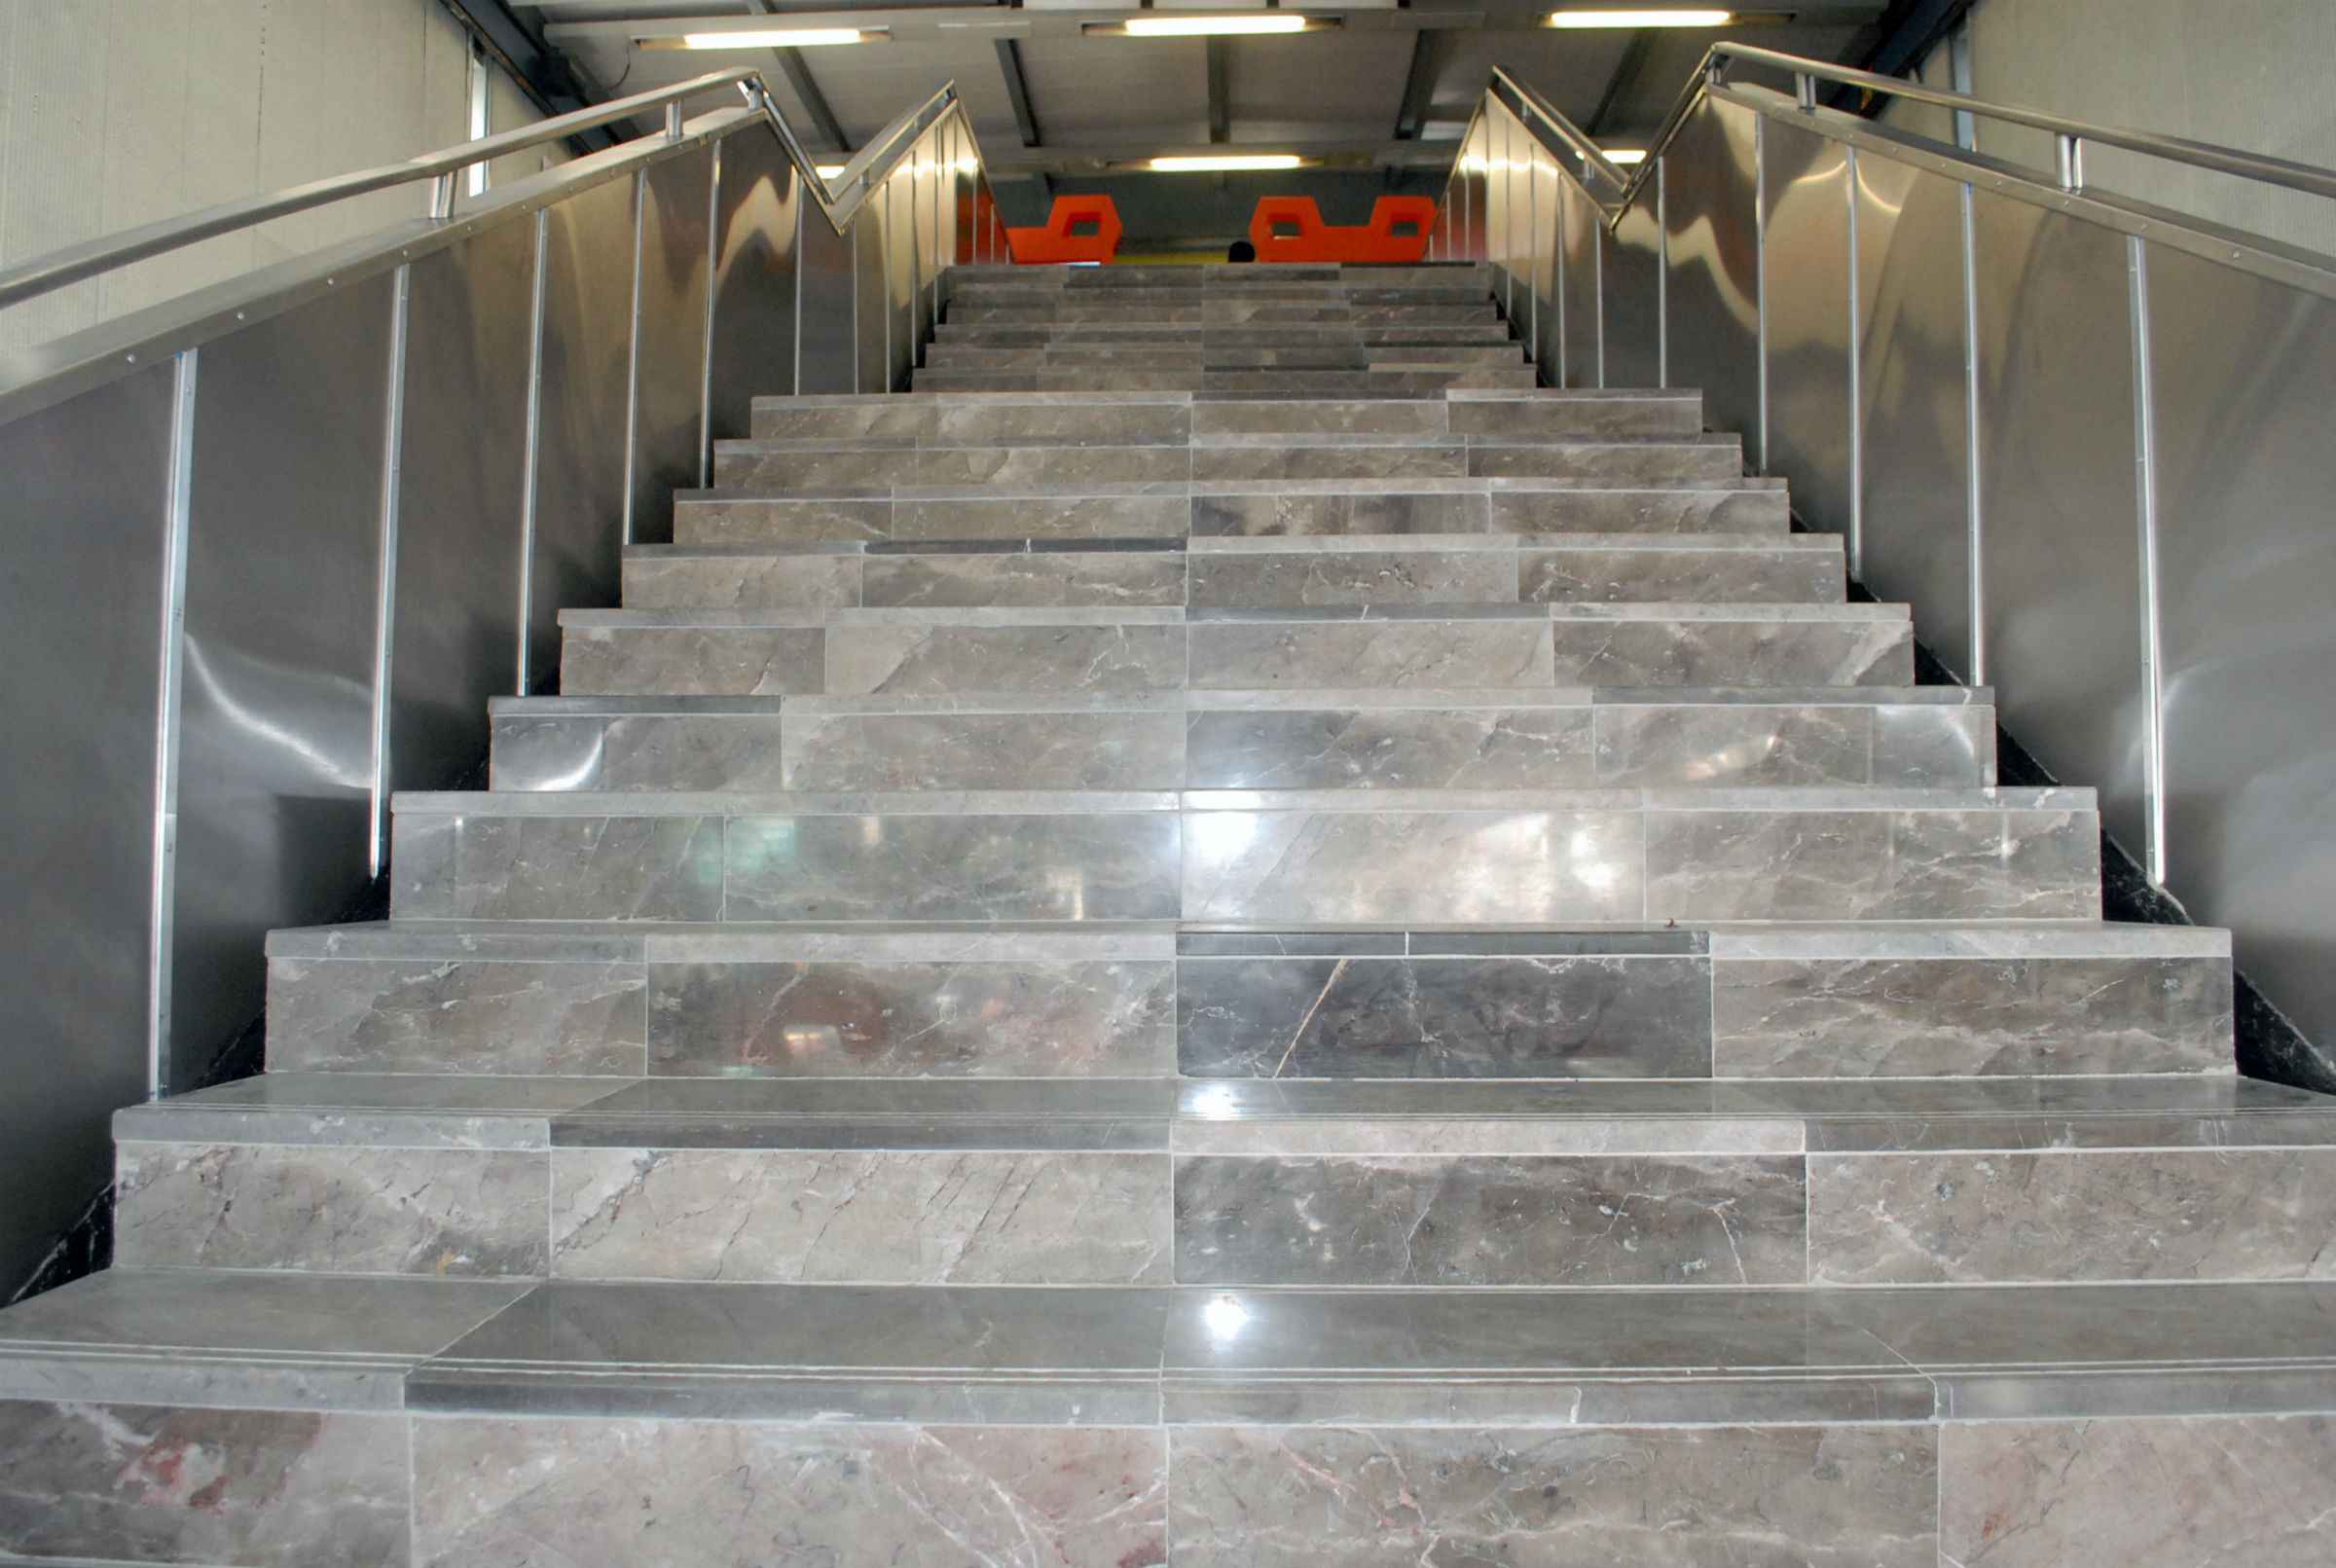 Rehabilitadas 32 escaleras fijas de la Línea 2 del Metro - STC ESCALERAS 3